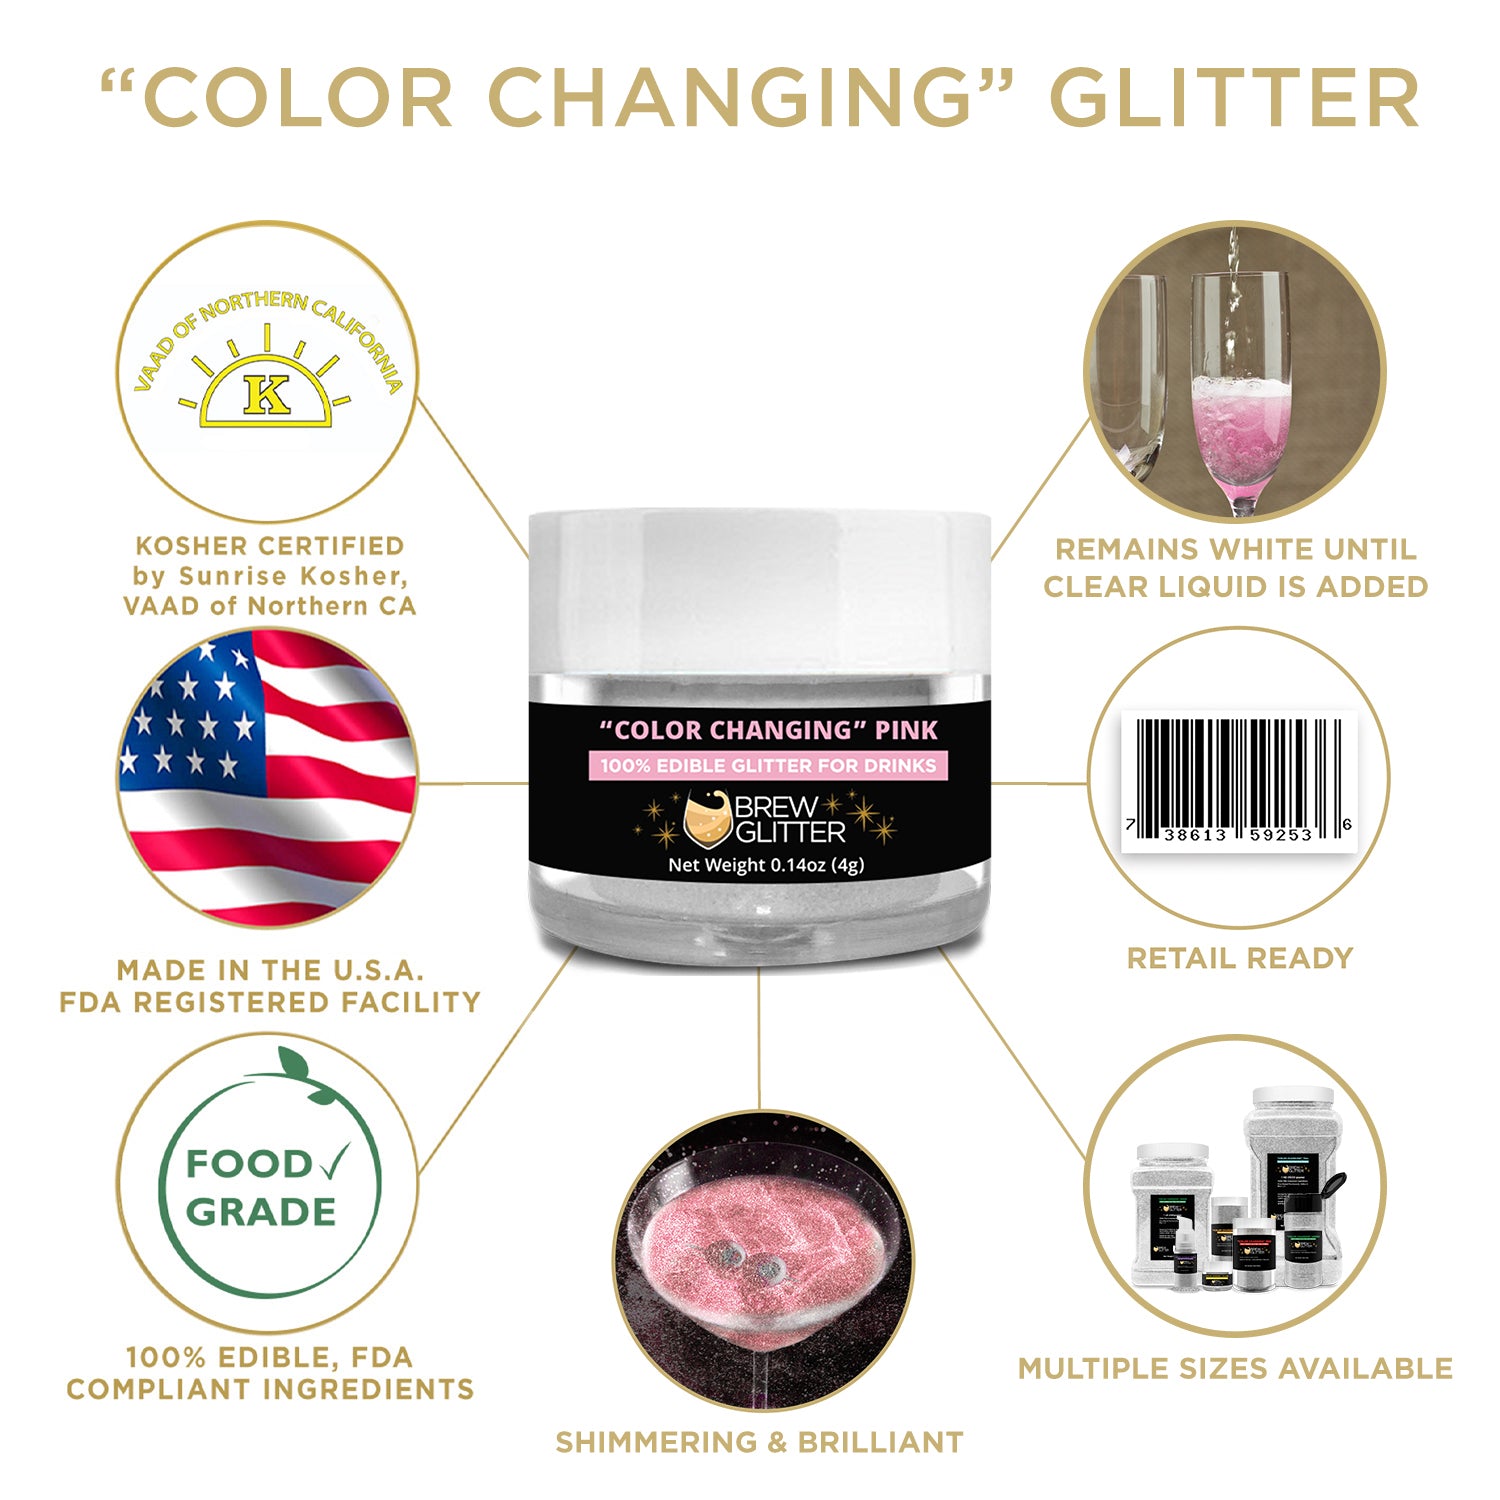 Color Changing Kosher & Halal Certified Beverage Glitter | Brewglitter.com